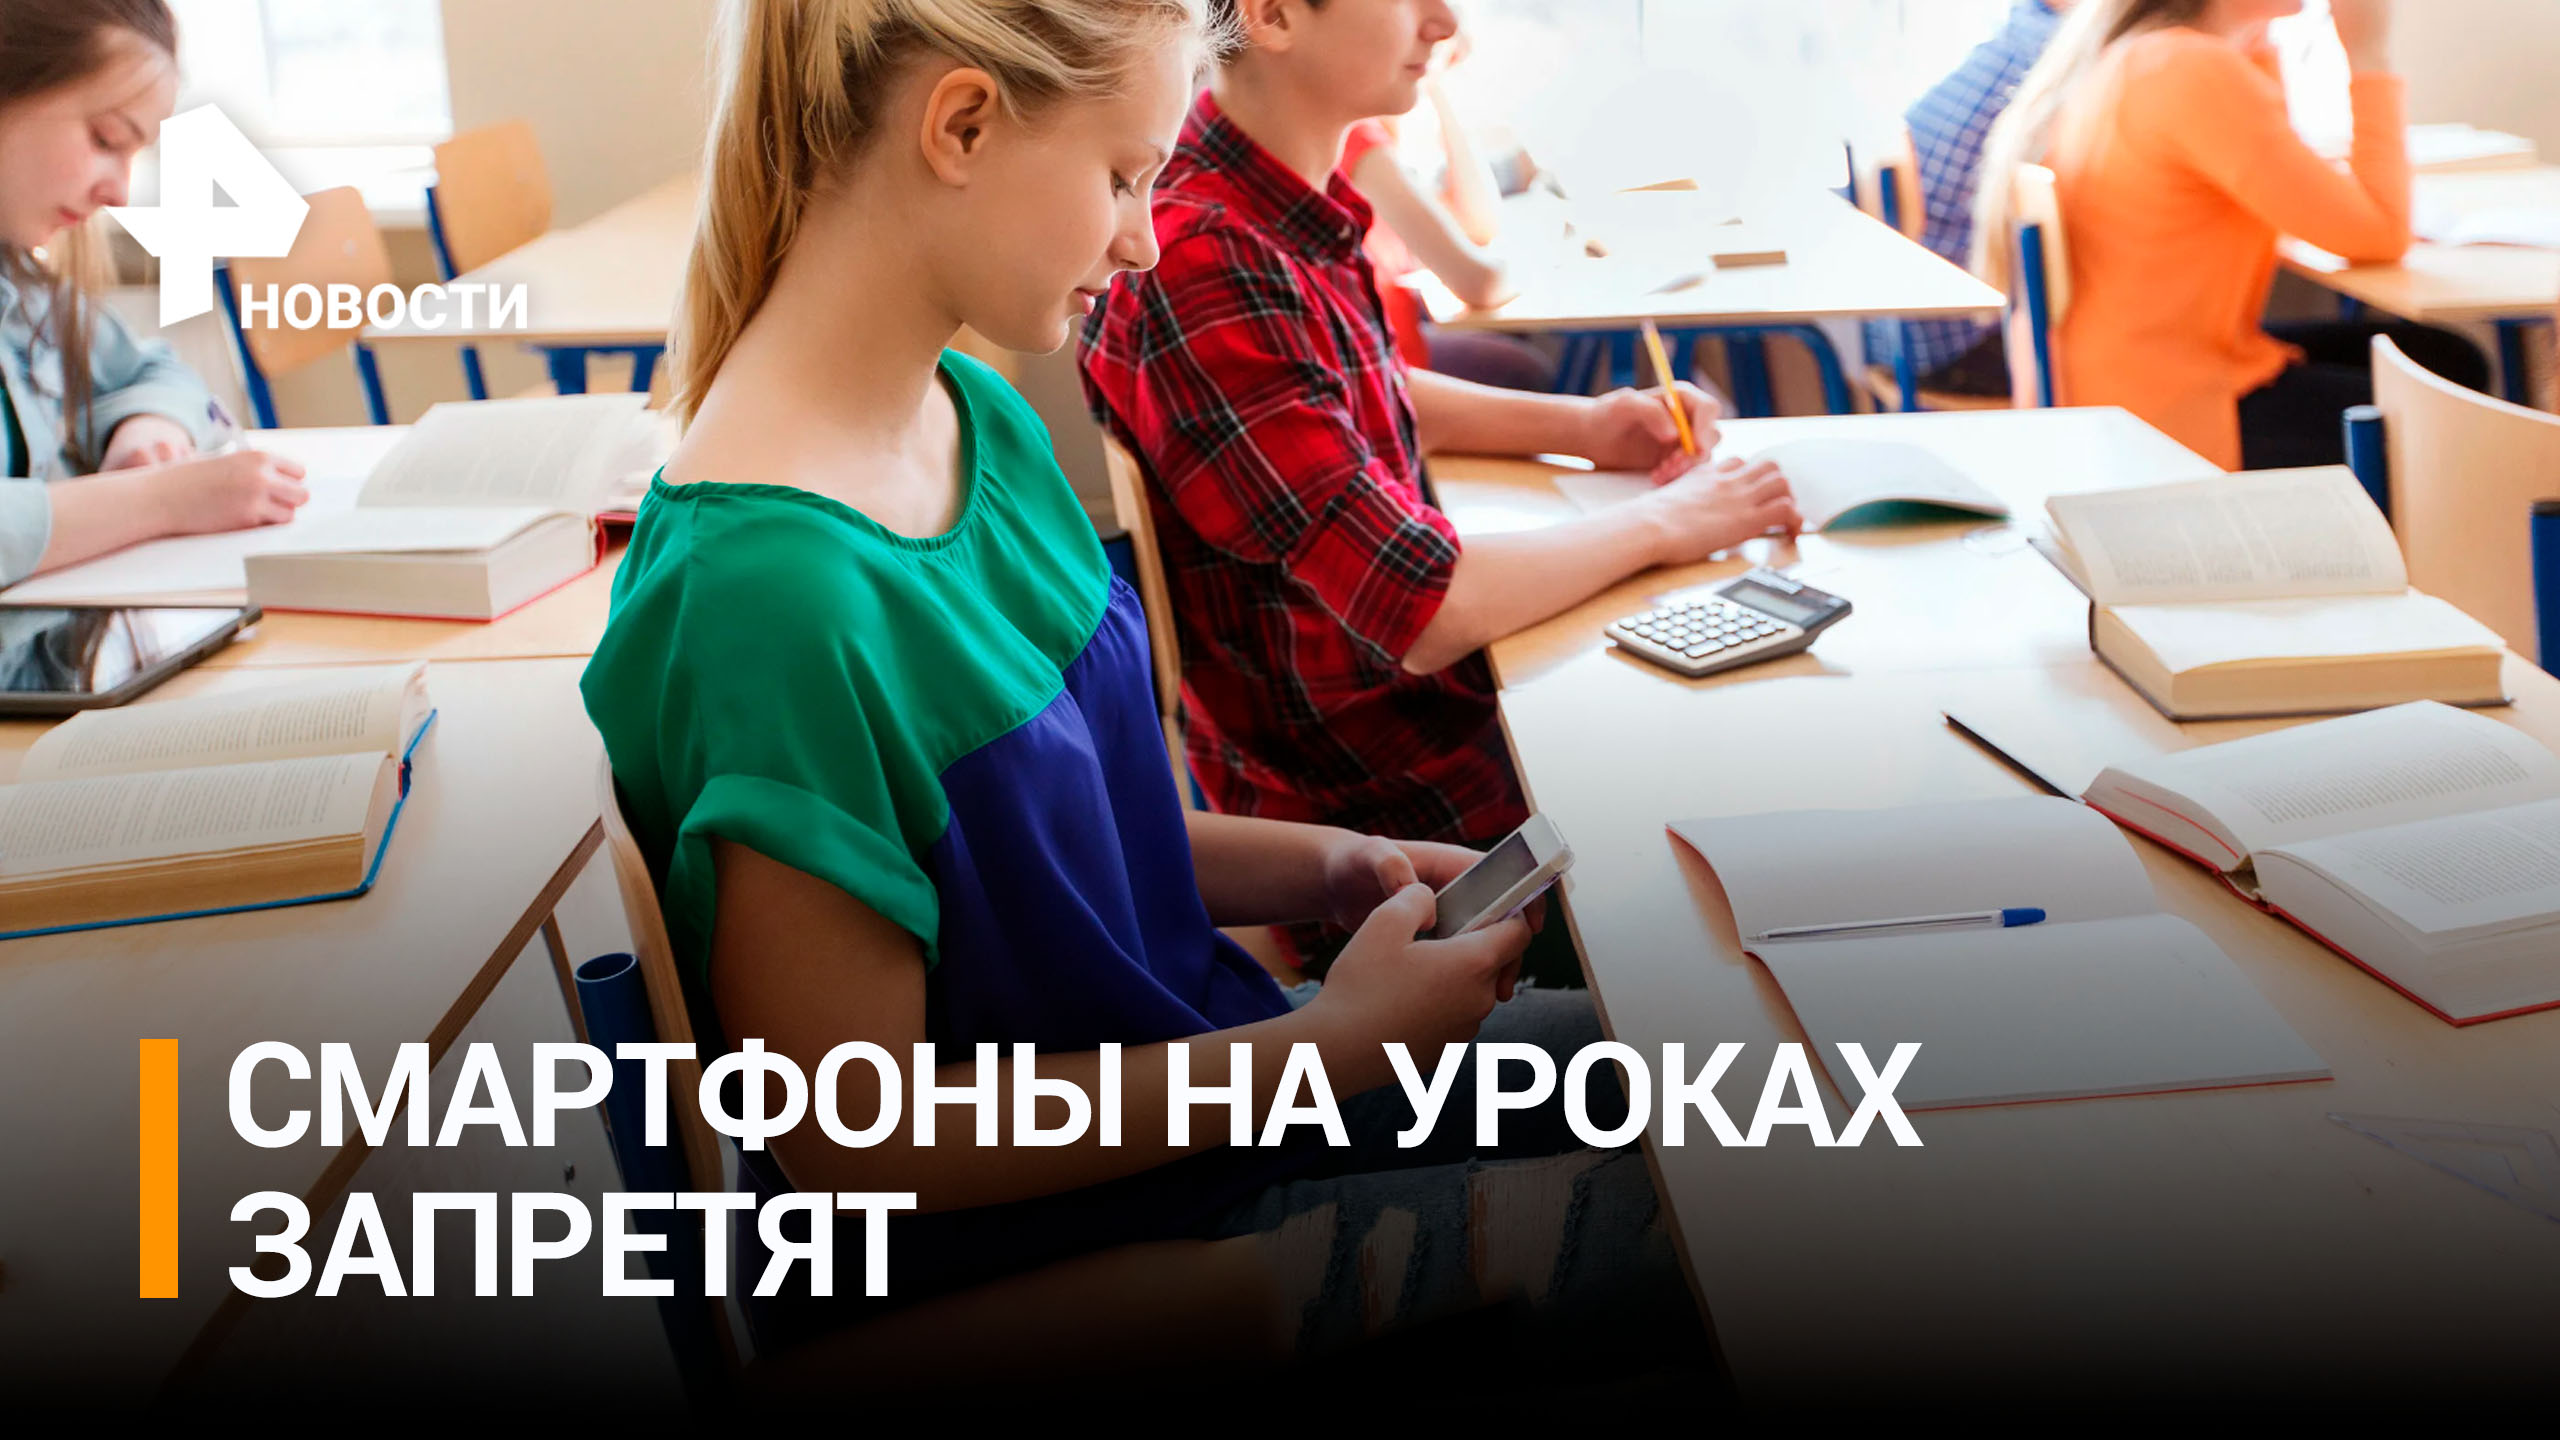 Школьникам запретят пользоваться смартфонами на уроках / РЕН Новости